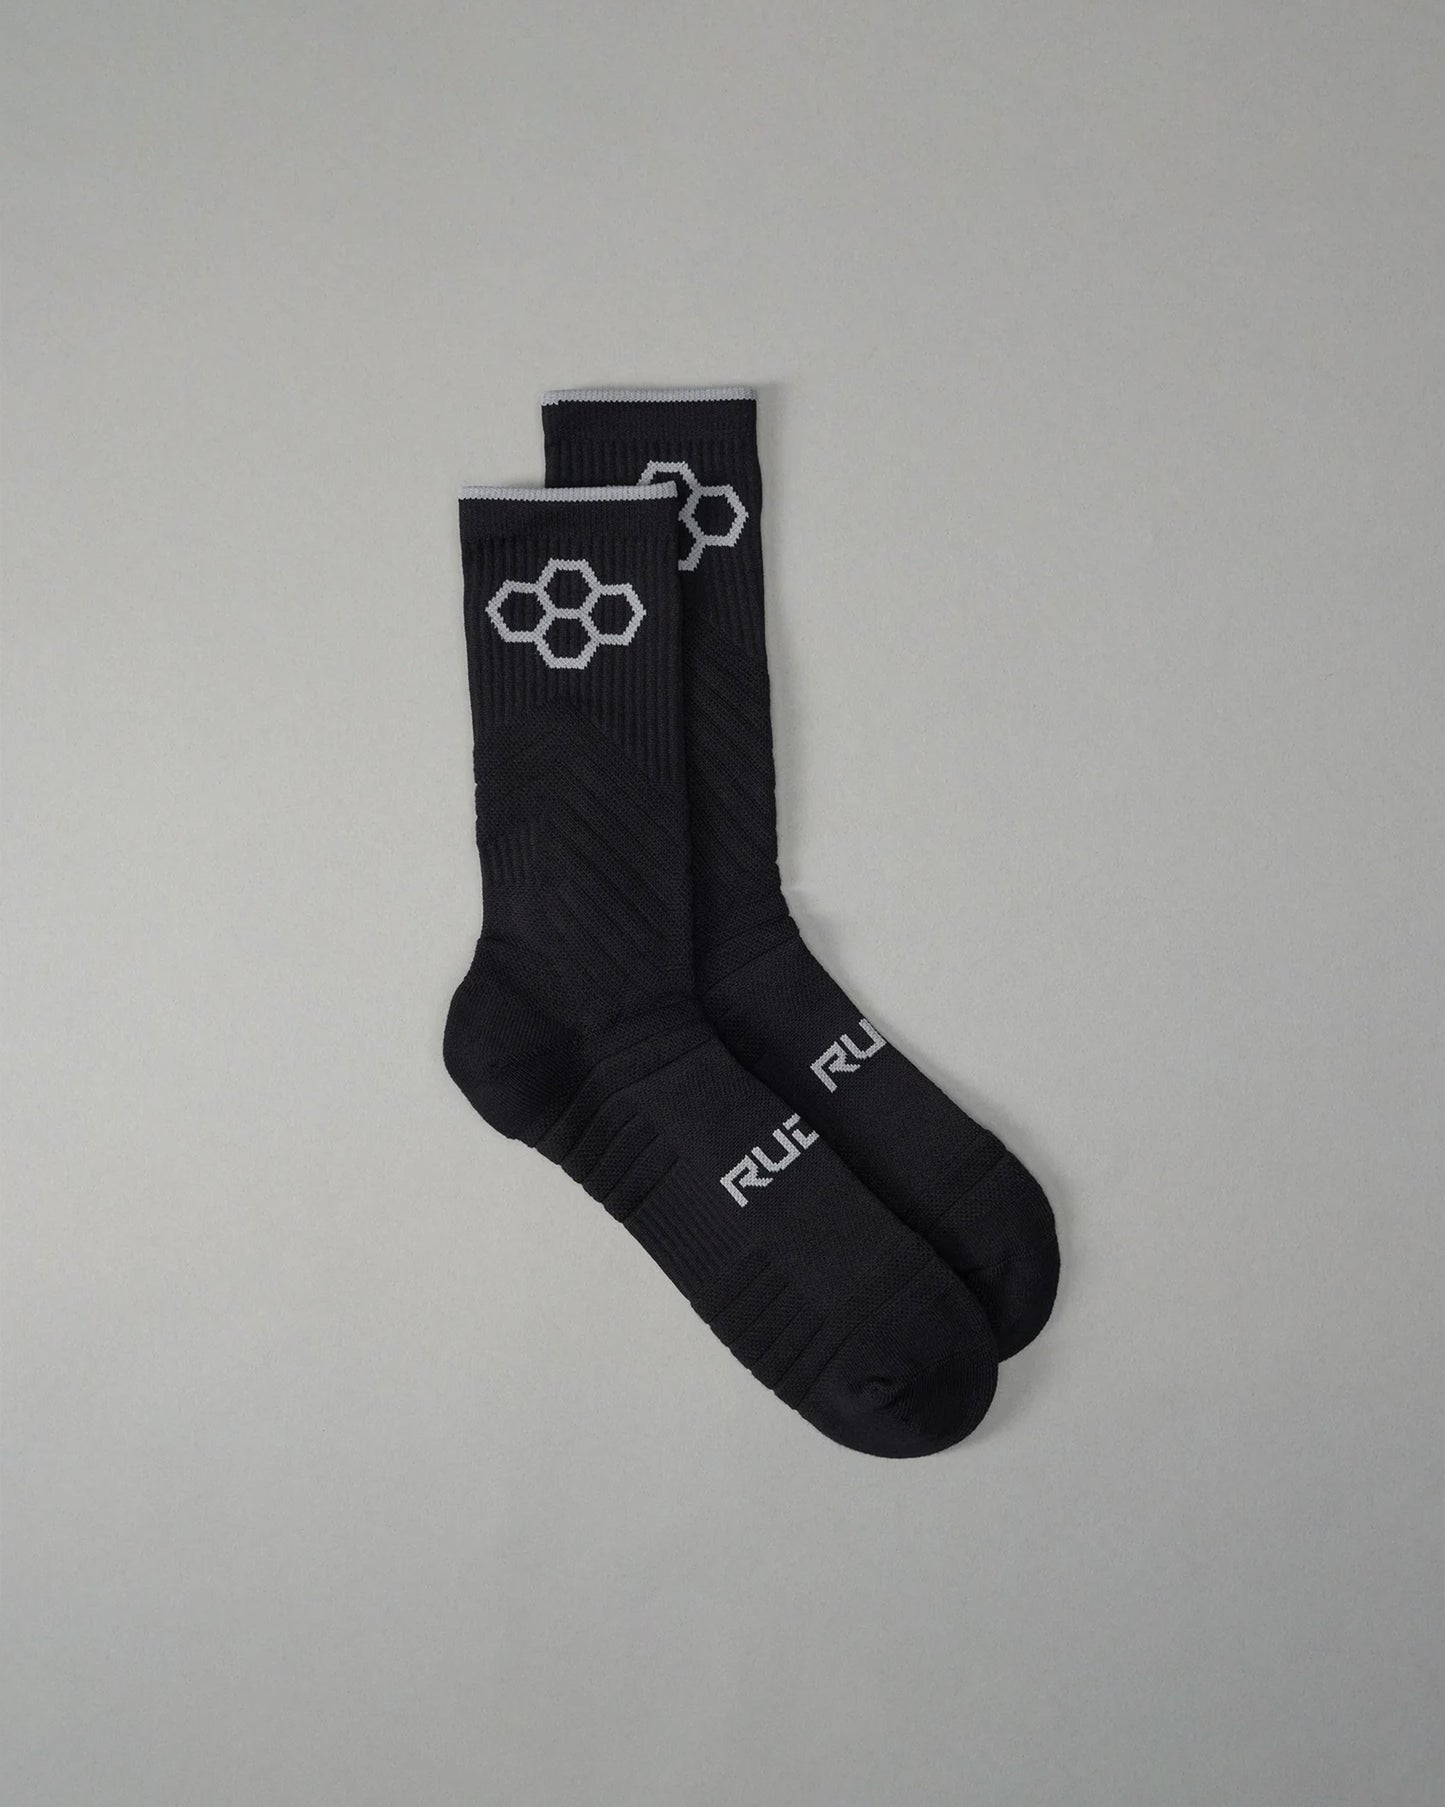 RUDIS Performance Padded Socks